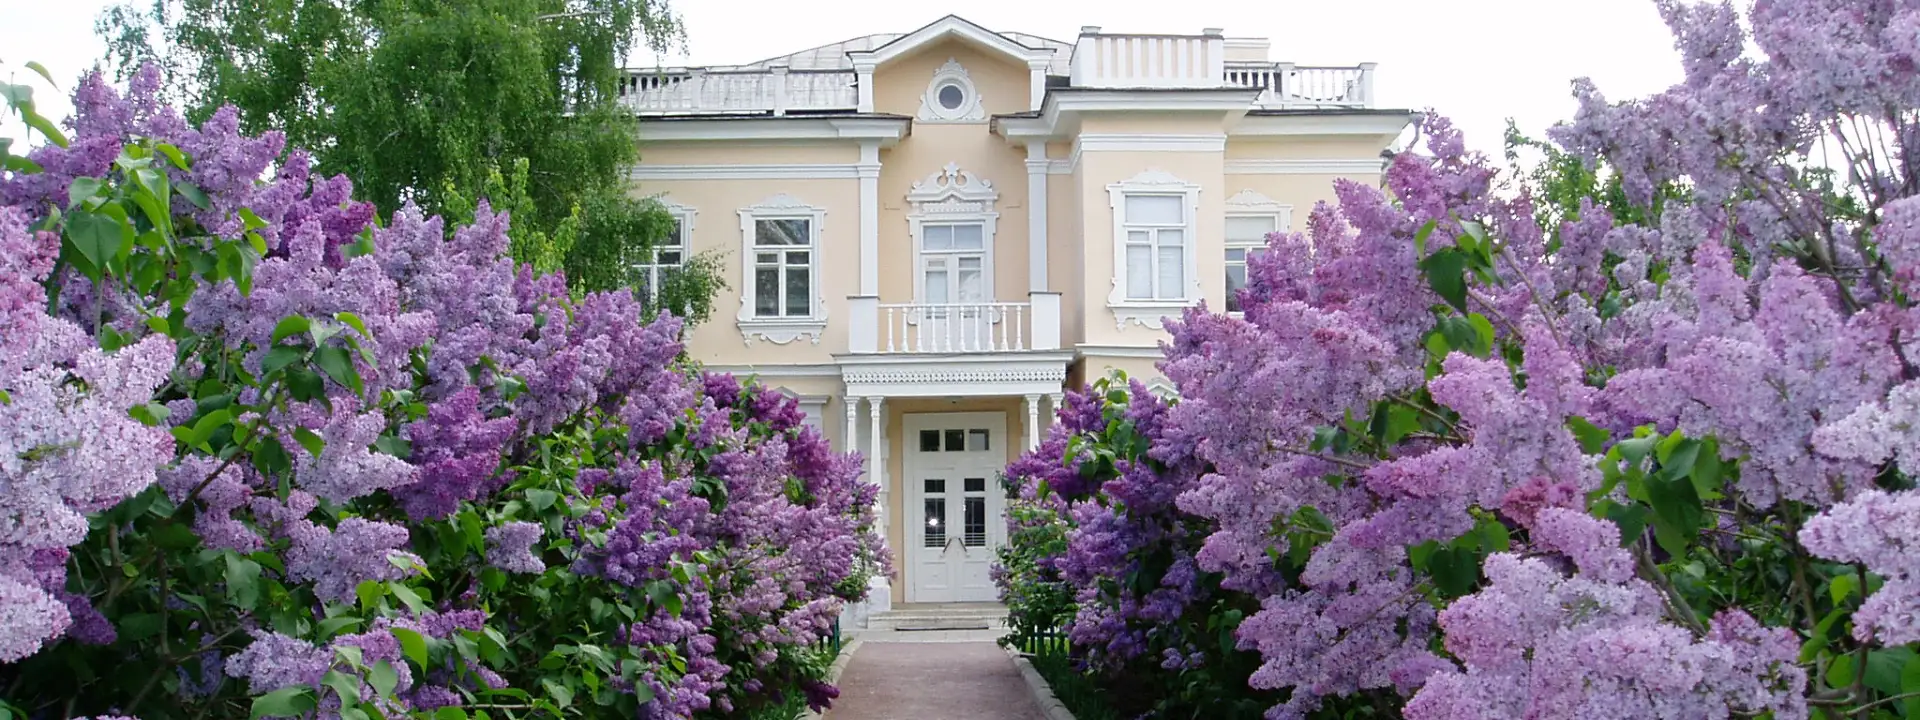 Государственный музей-заповедник М.А. Шолохова в станице Вешенской